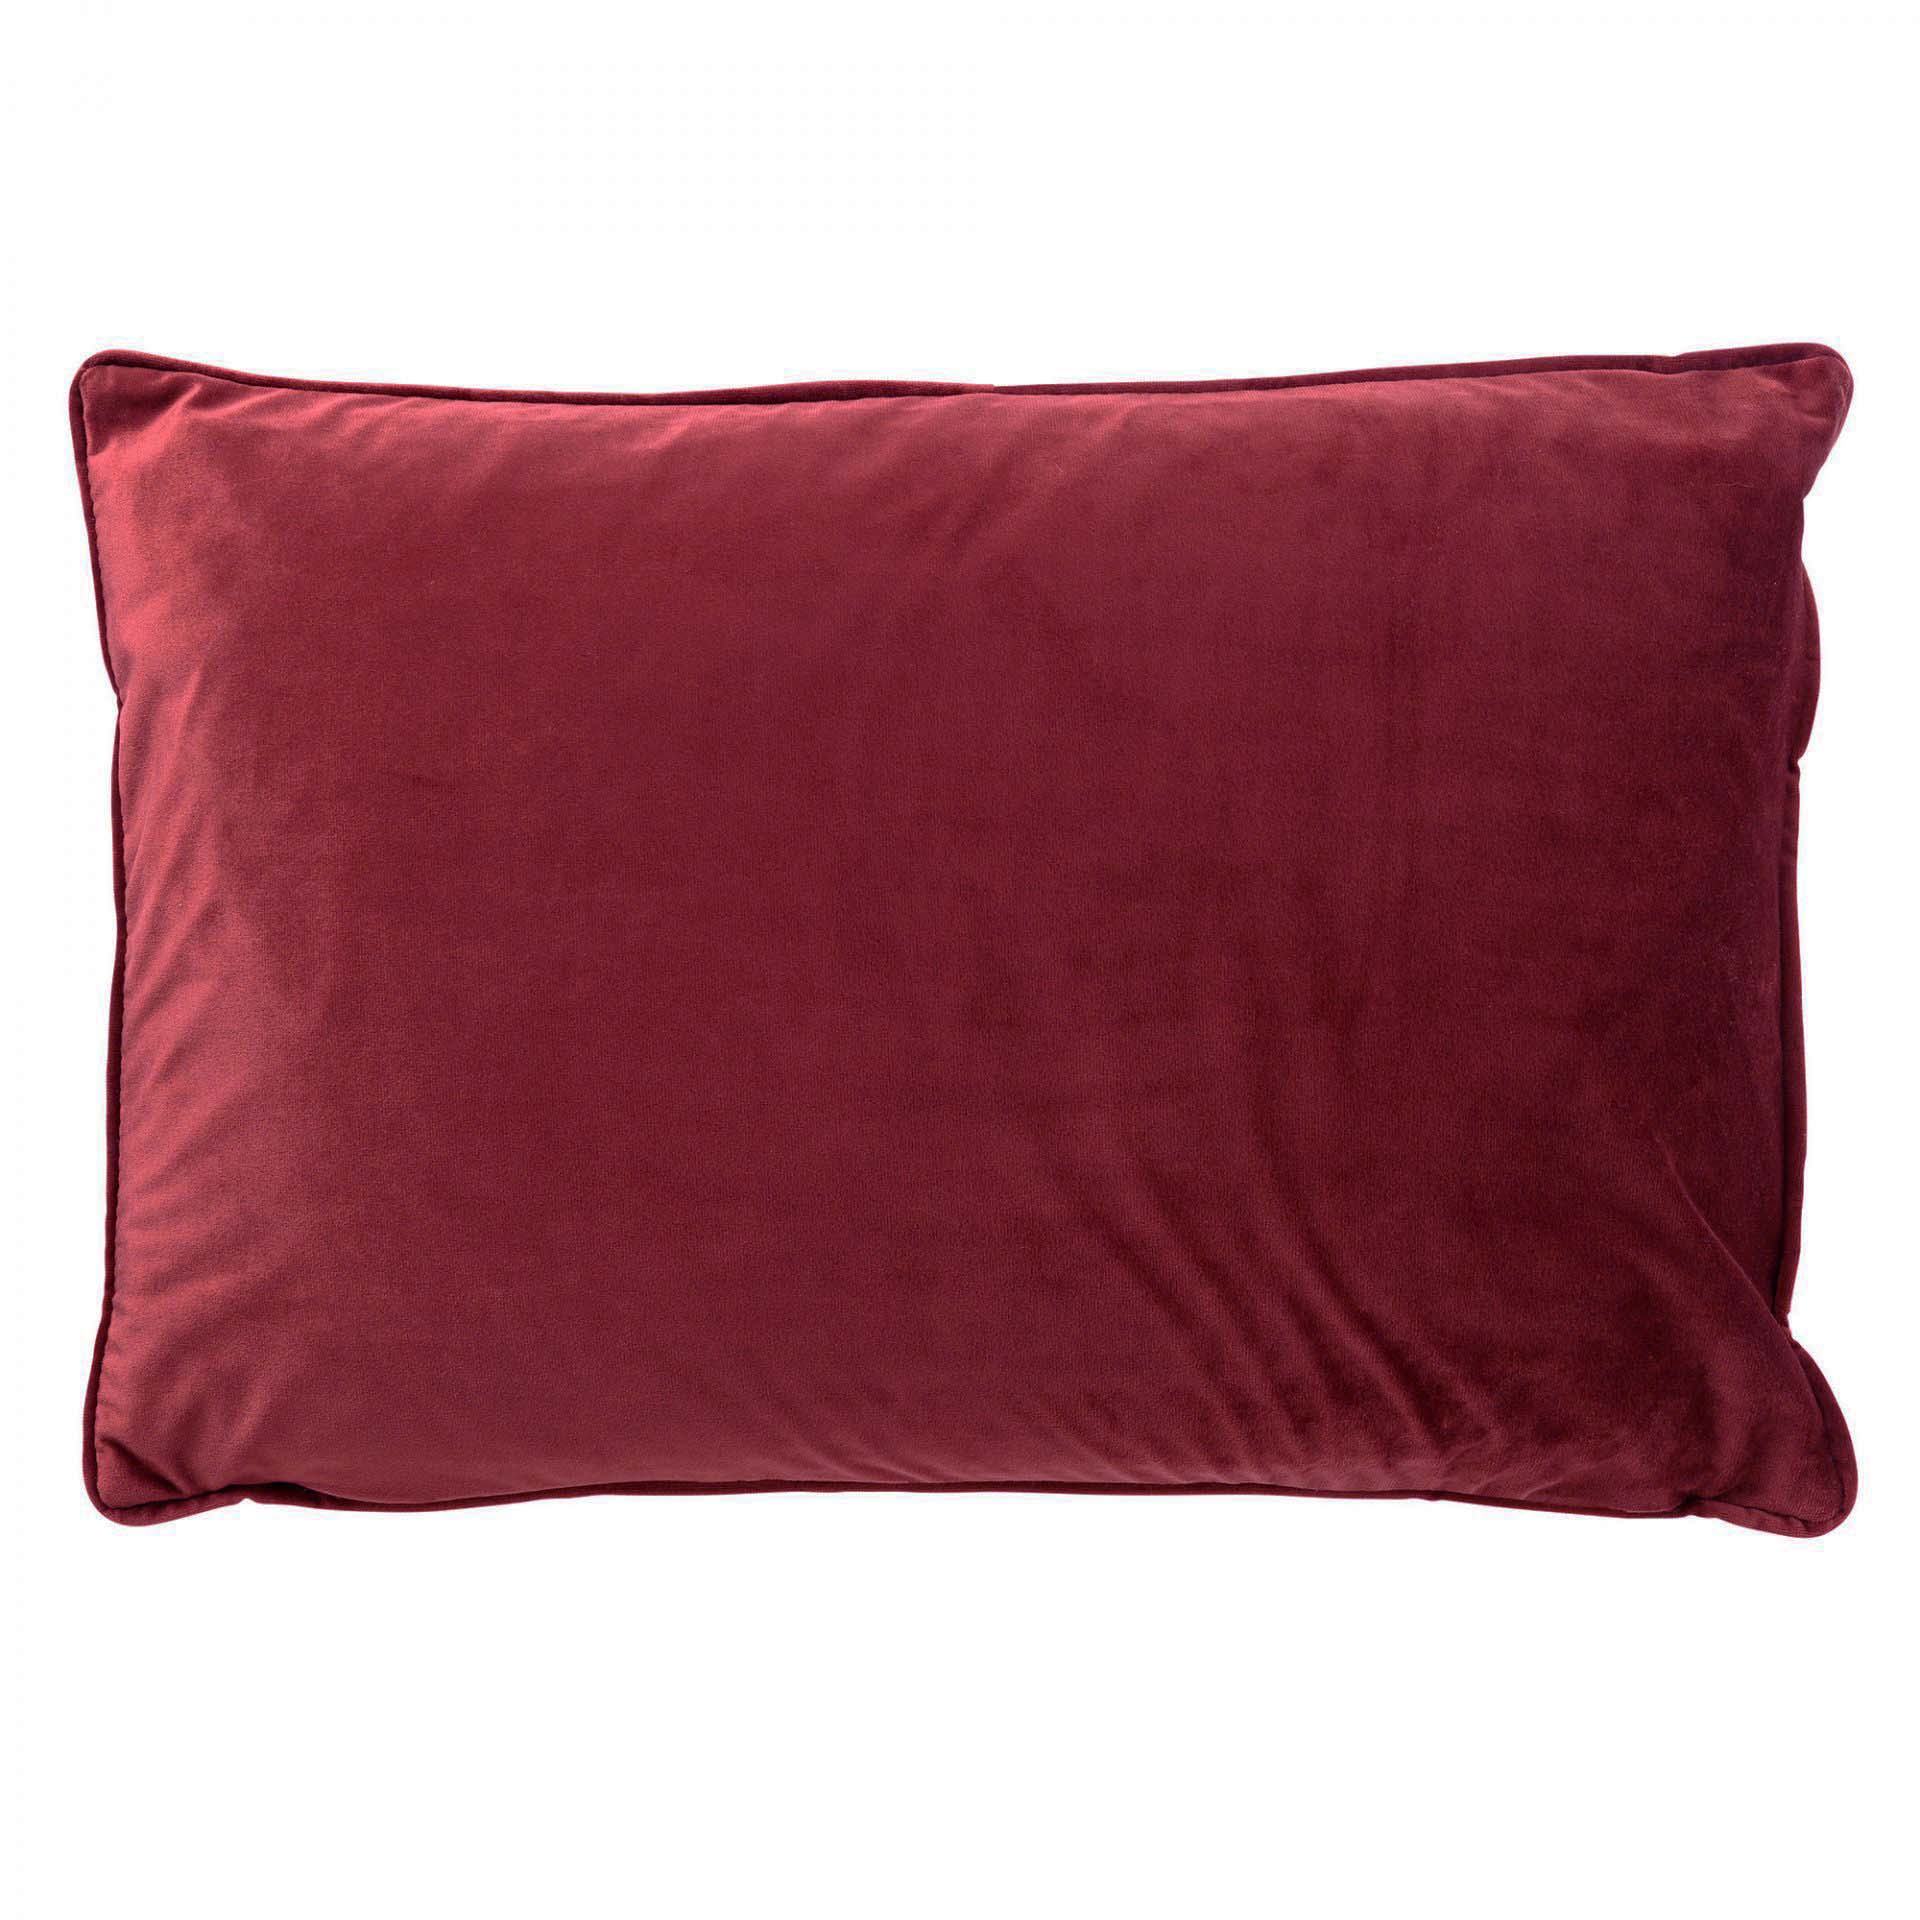 FINN - Cushion velvet 40x60 cm - Merlot - red 